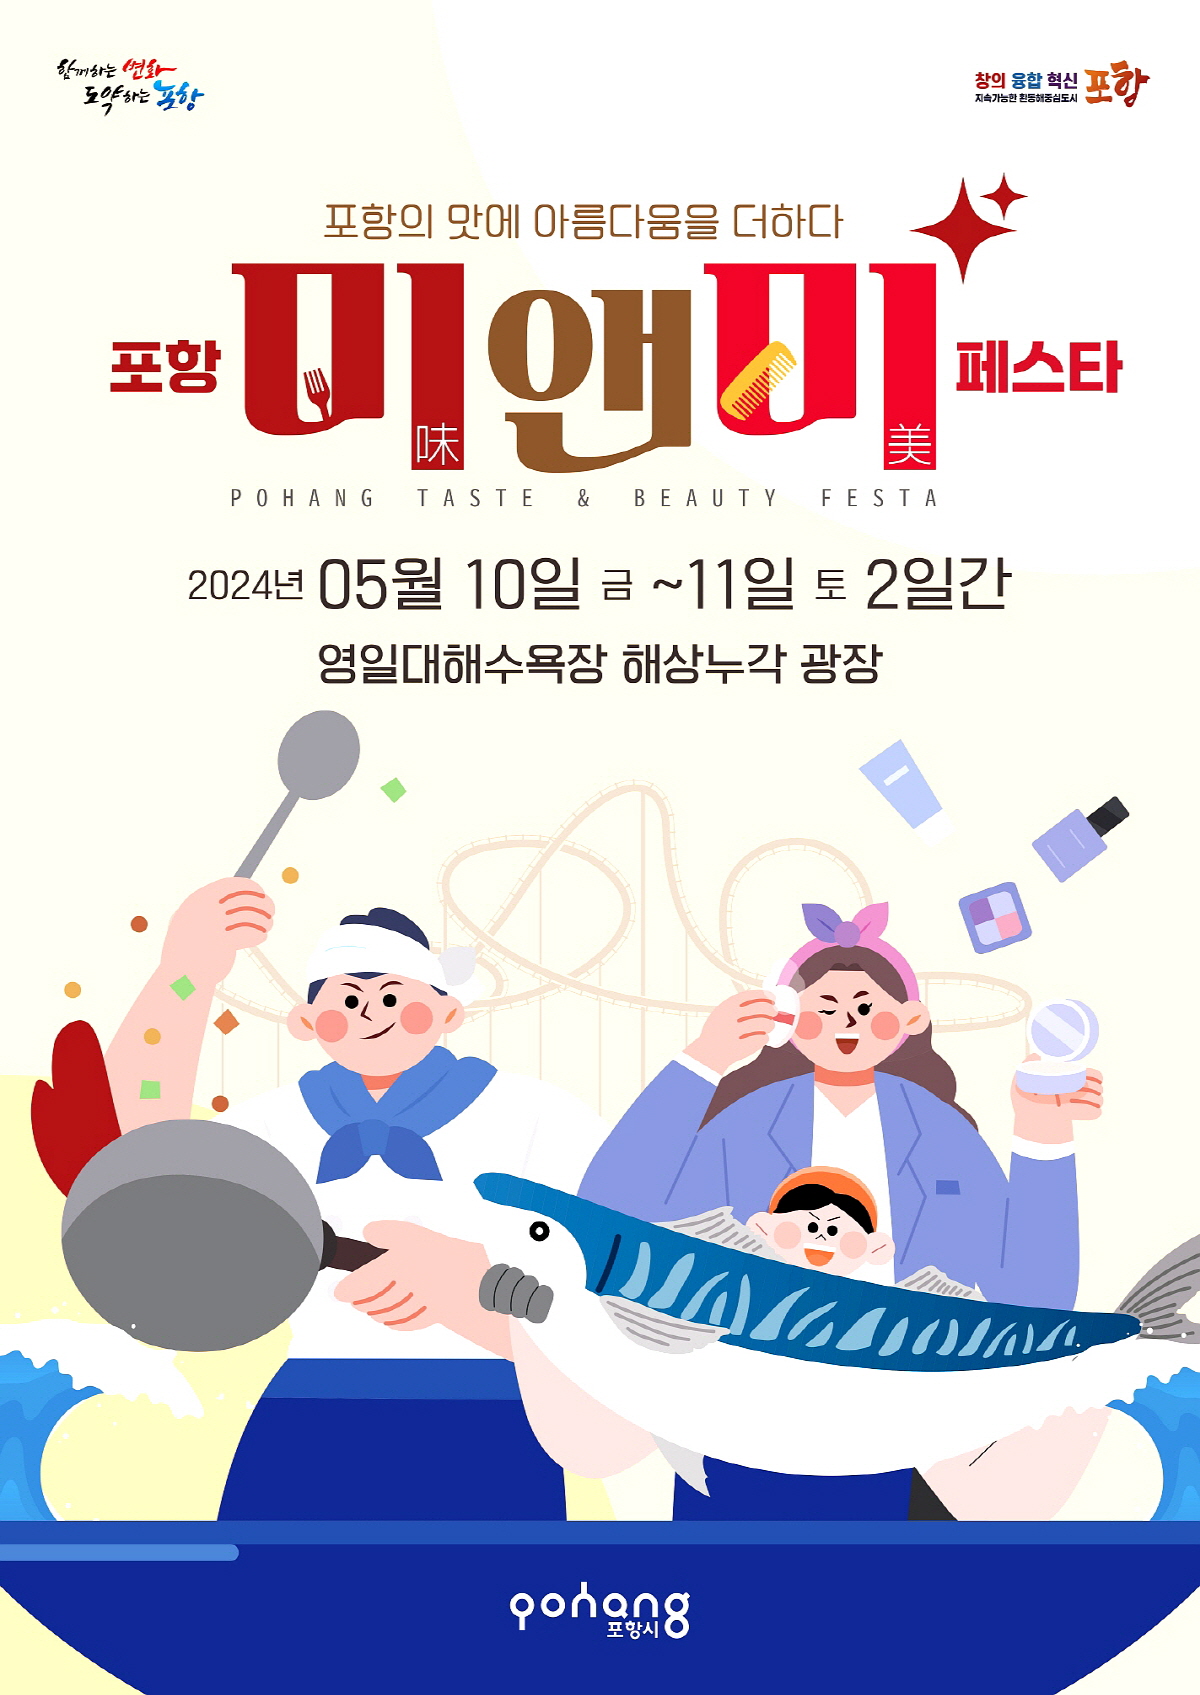 포항의 맛에 아름다움을 더하는‘포항 미(味)&미(美) 페스타’ 개최